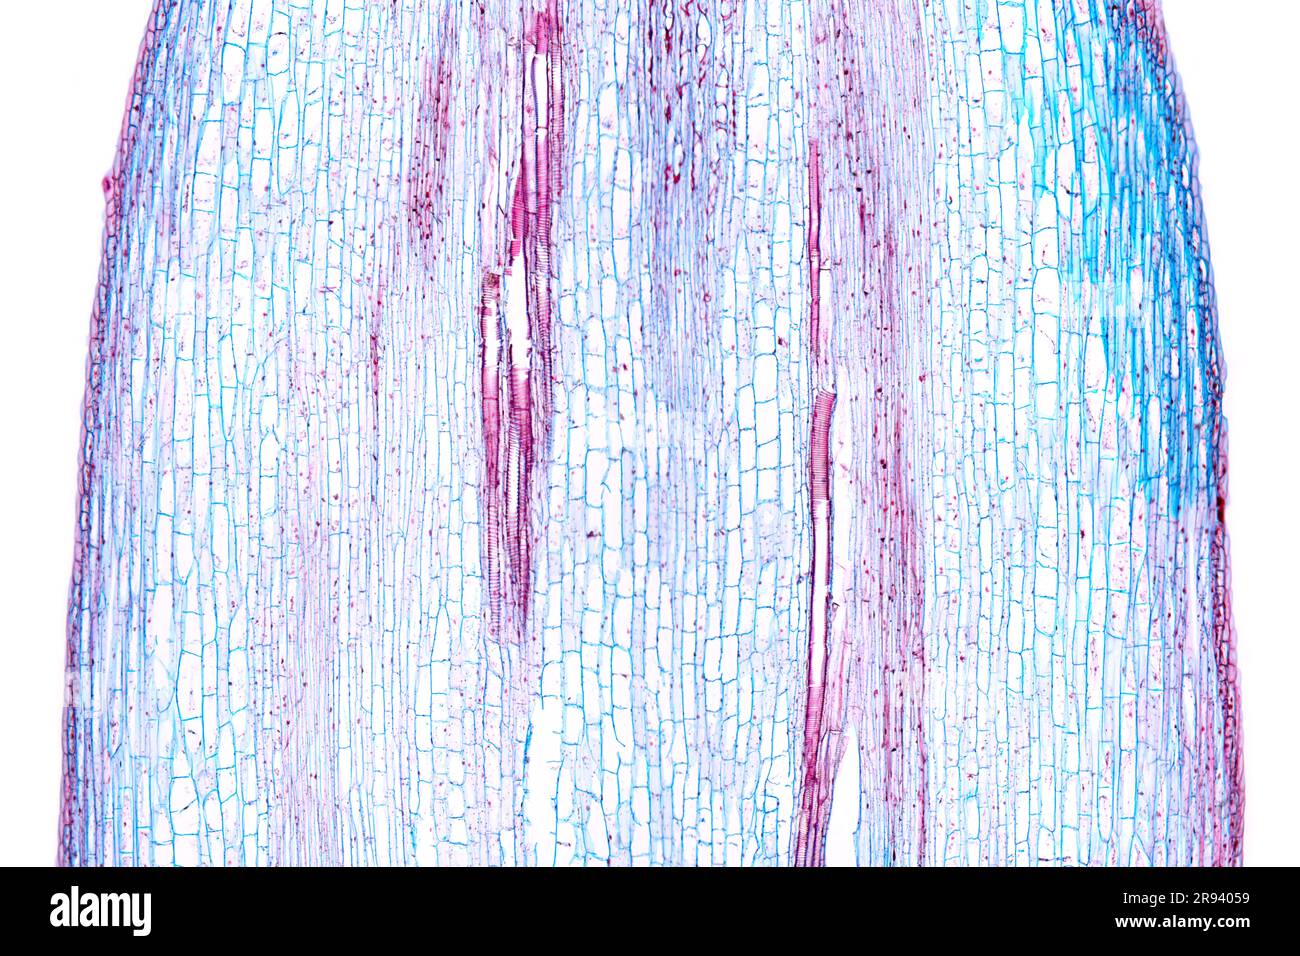 Sonnenblumenstiel, Längsschnitt, 20X-Lichtmikroskop. Stamm von Helianthus annuus, unter Lichtmikroskop. Hämatoxylin-Eosin gefärbt. Stockfoto